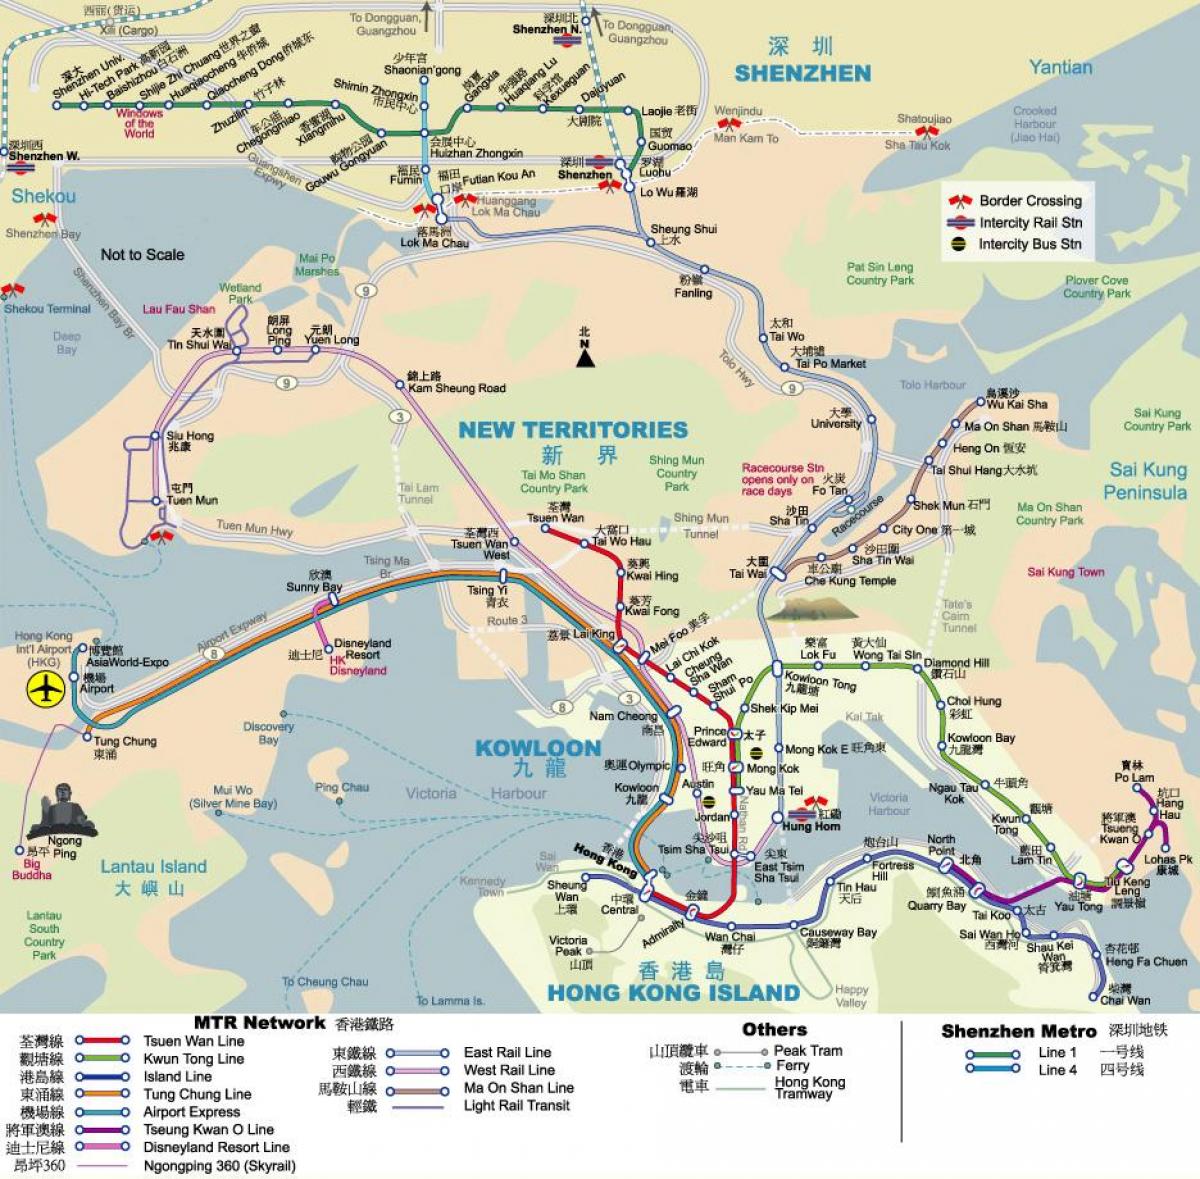 MTR mapu Hong Kong